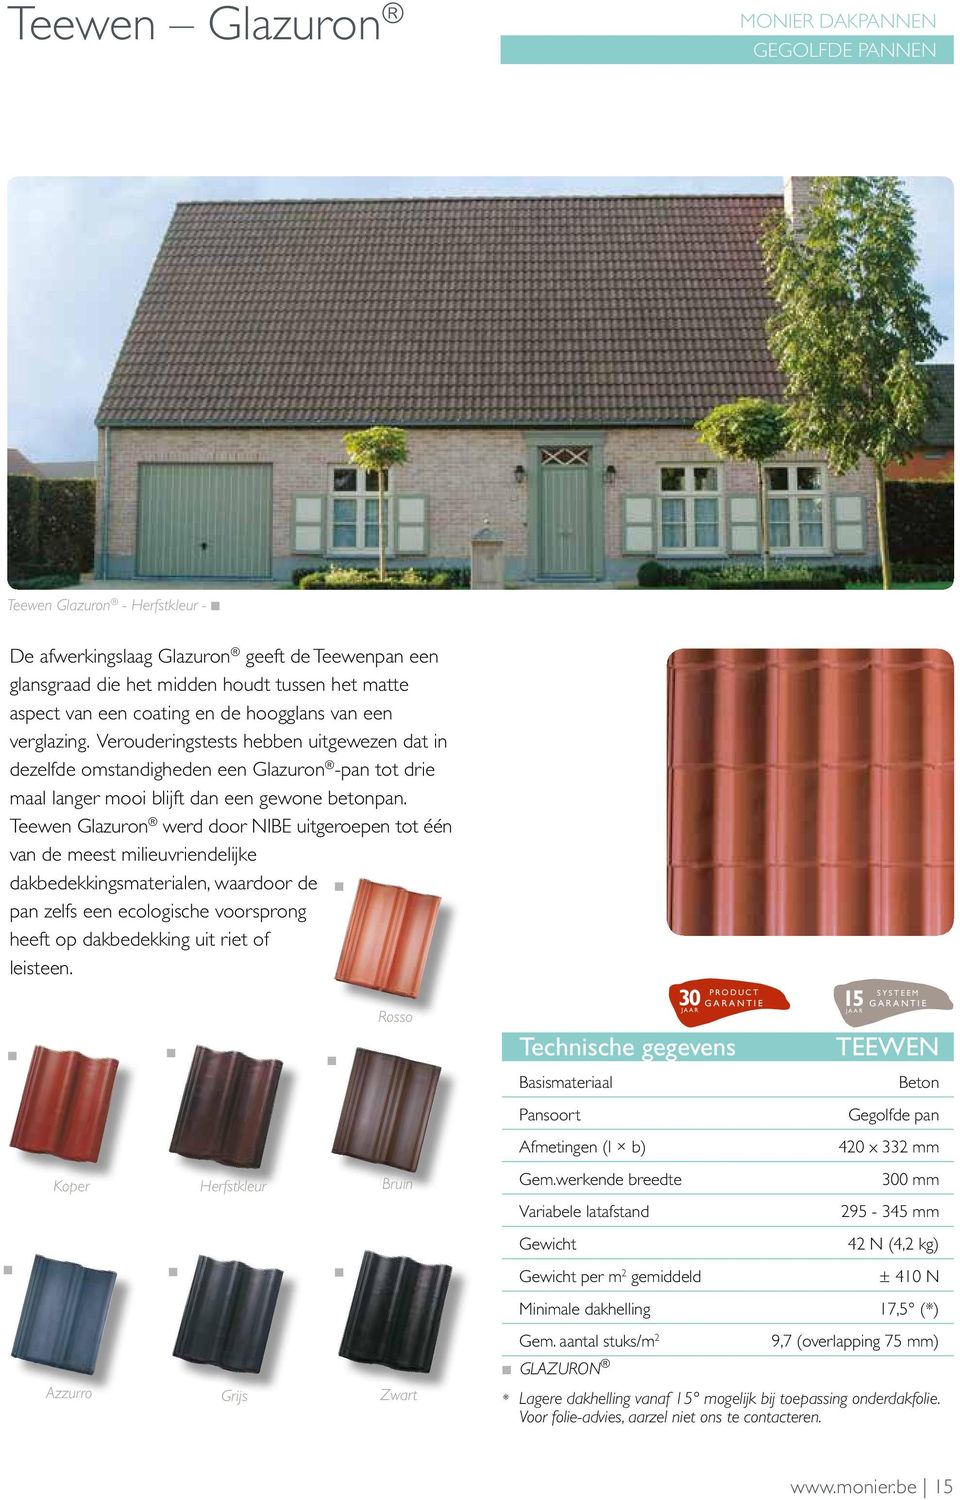 Teewen Glazuron werd door NIBE uitgeroepen tot één van de meest milieuvriendelijke dakbedekkingsmaterialen, waardoor de pan zelfs een ecologische voorsprong heeft op dakbedekking uit riet of leisteen.